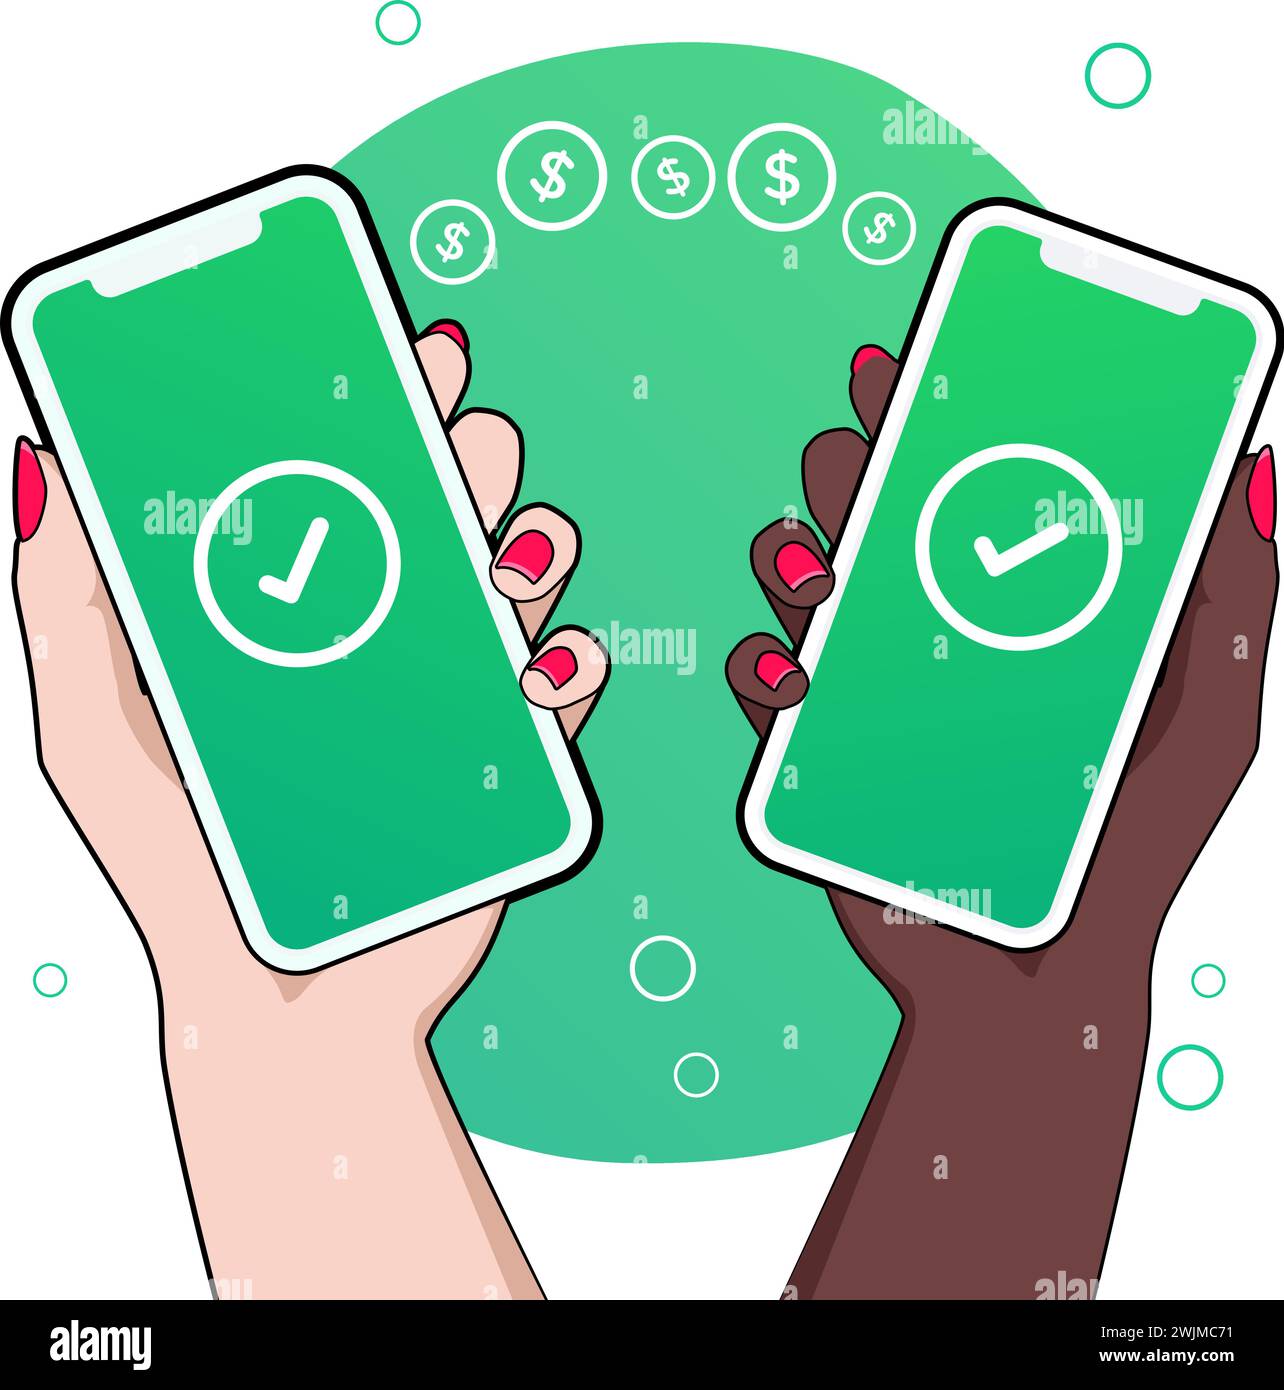 Zwei Smartphones, die von Frauen gehalten werden und Zahlungsbestätigungen anzeigen. Über eine digitale Wallet-Anwendung auf einem Mobiltelefon. Stock Vektor